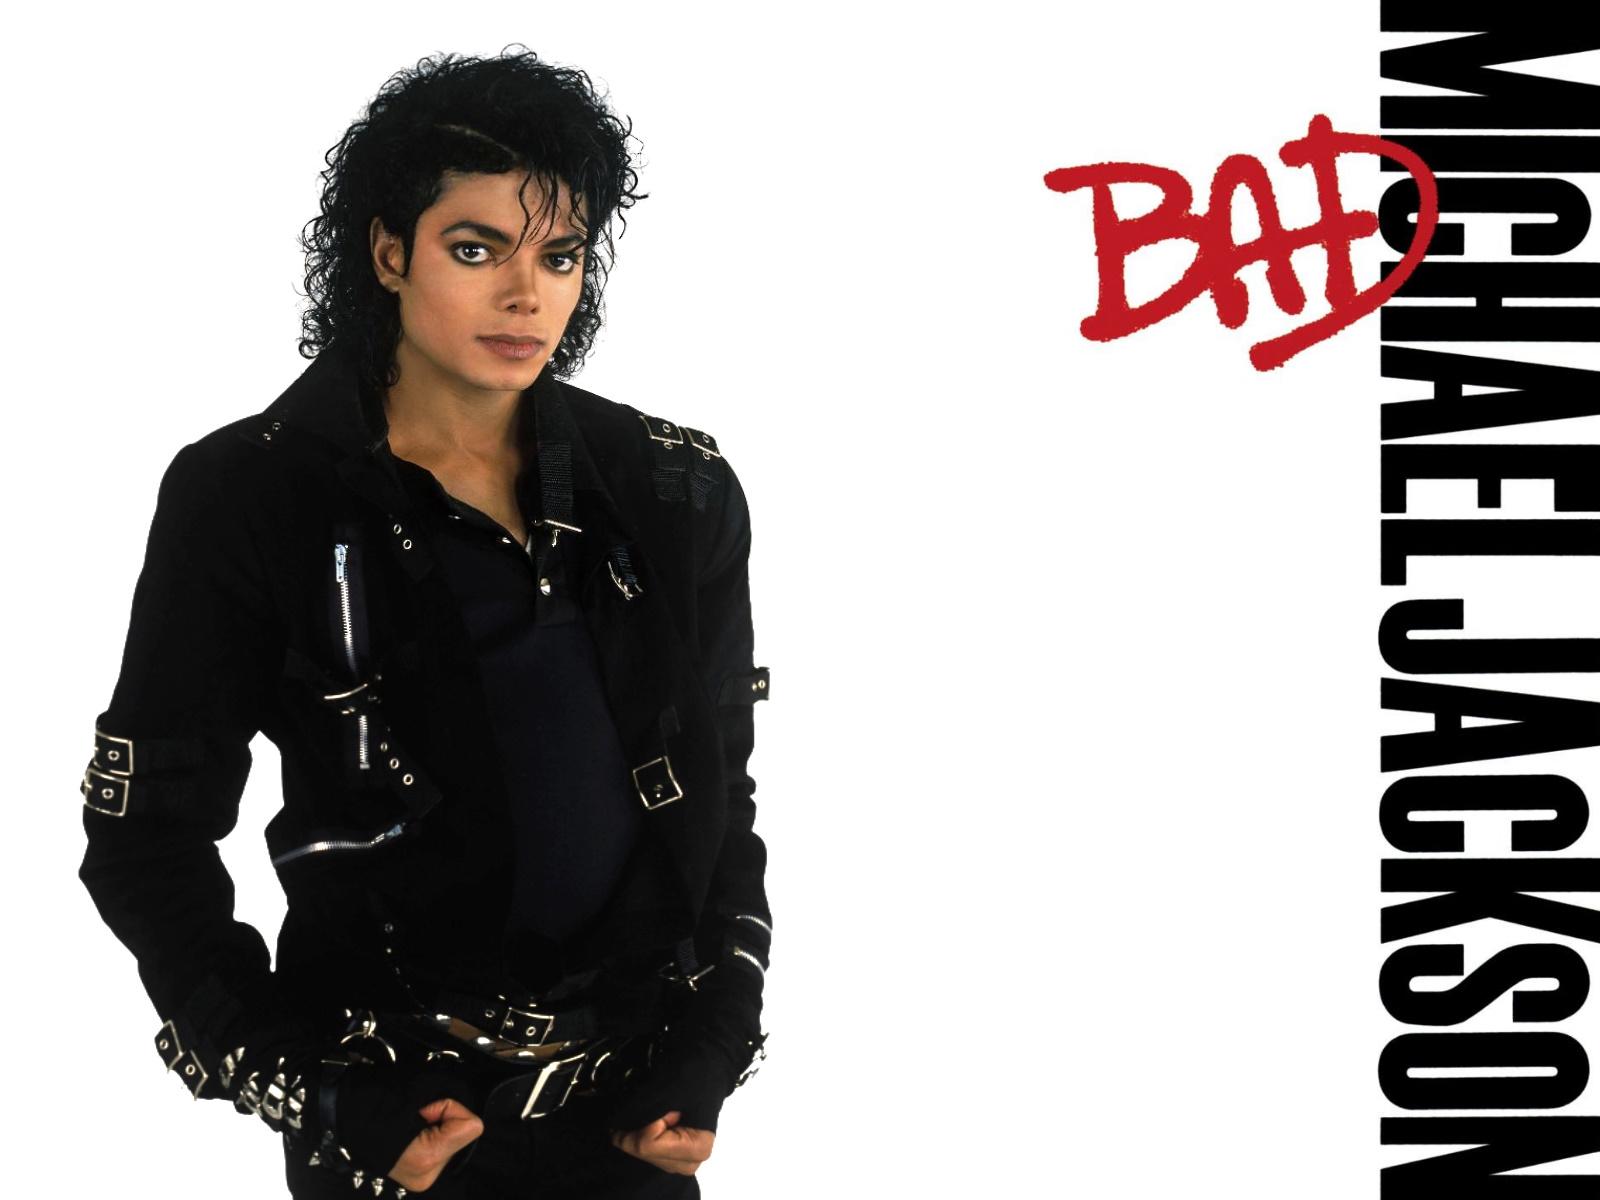 $!Michael Jackson cumpliría este domingo 63 años